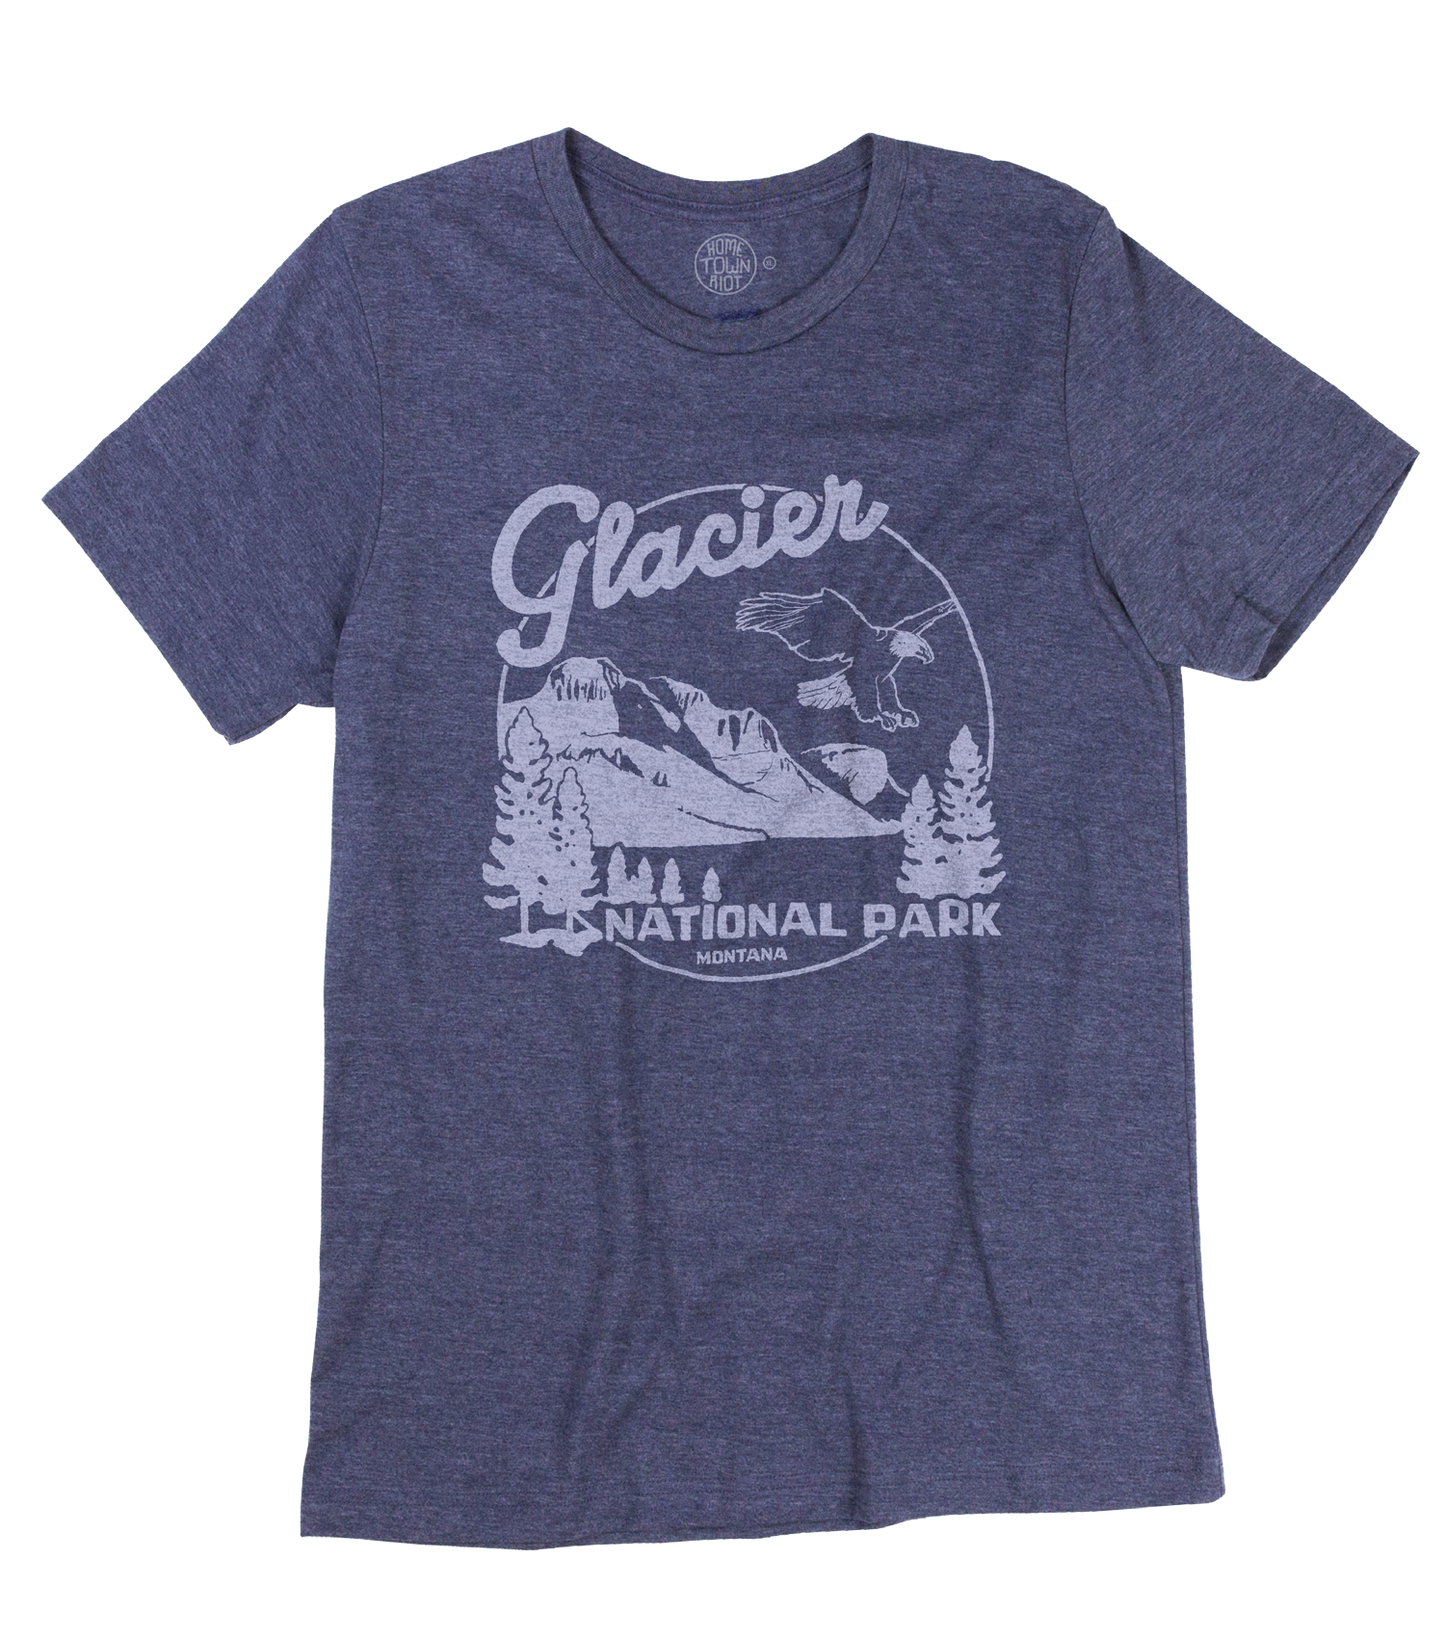 Glacier National Park Shirt, vintage clothing